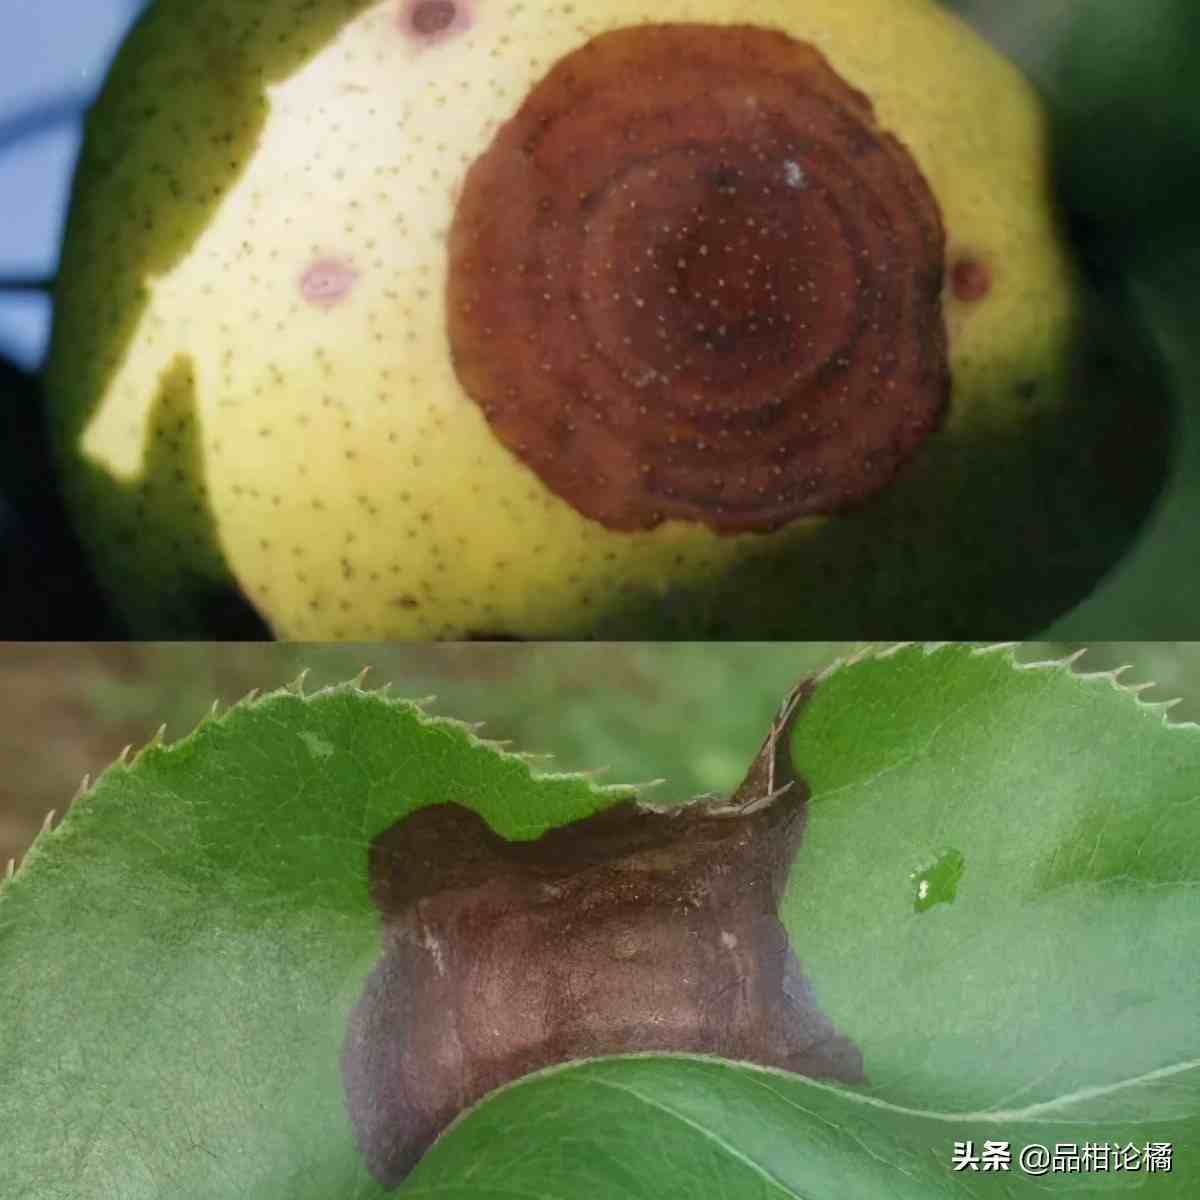 梨树种植常见病虫害及防治